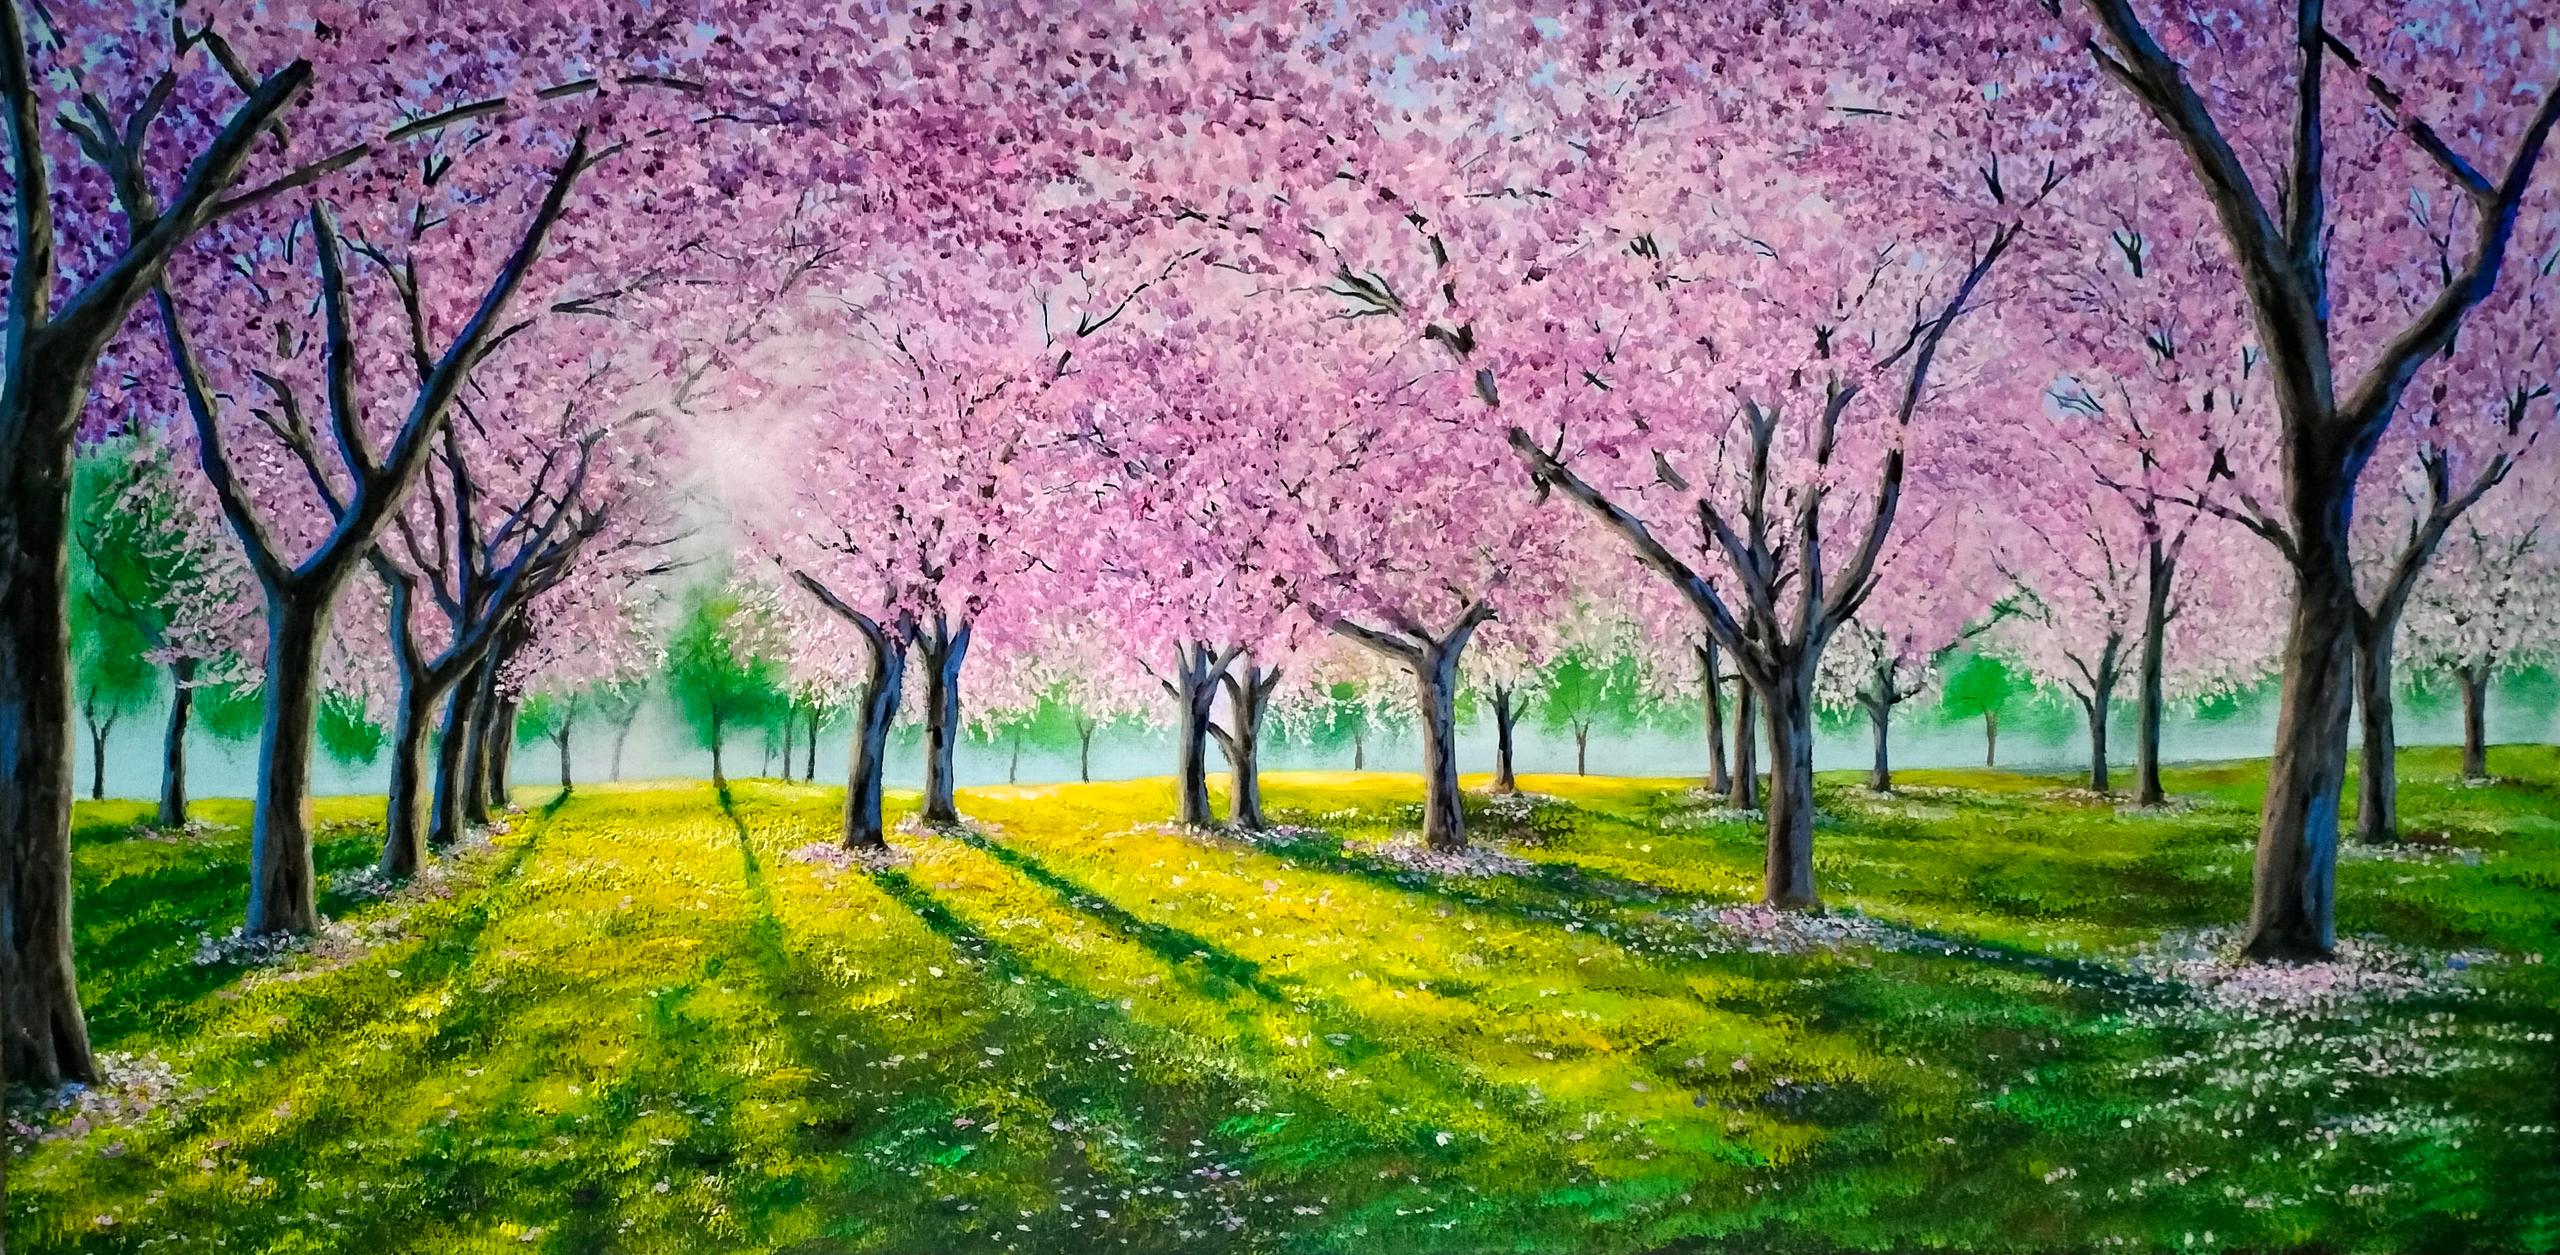 Il giardino dei ciliegi (Cherry blossoms)